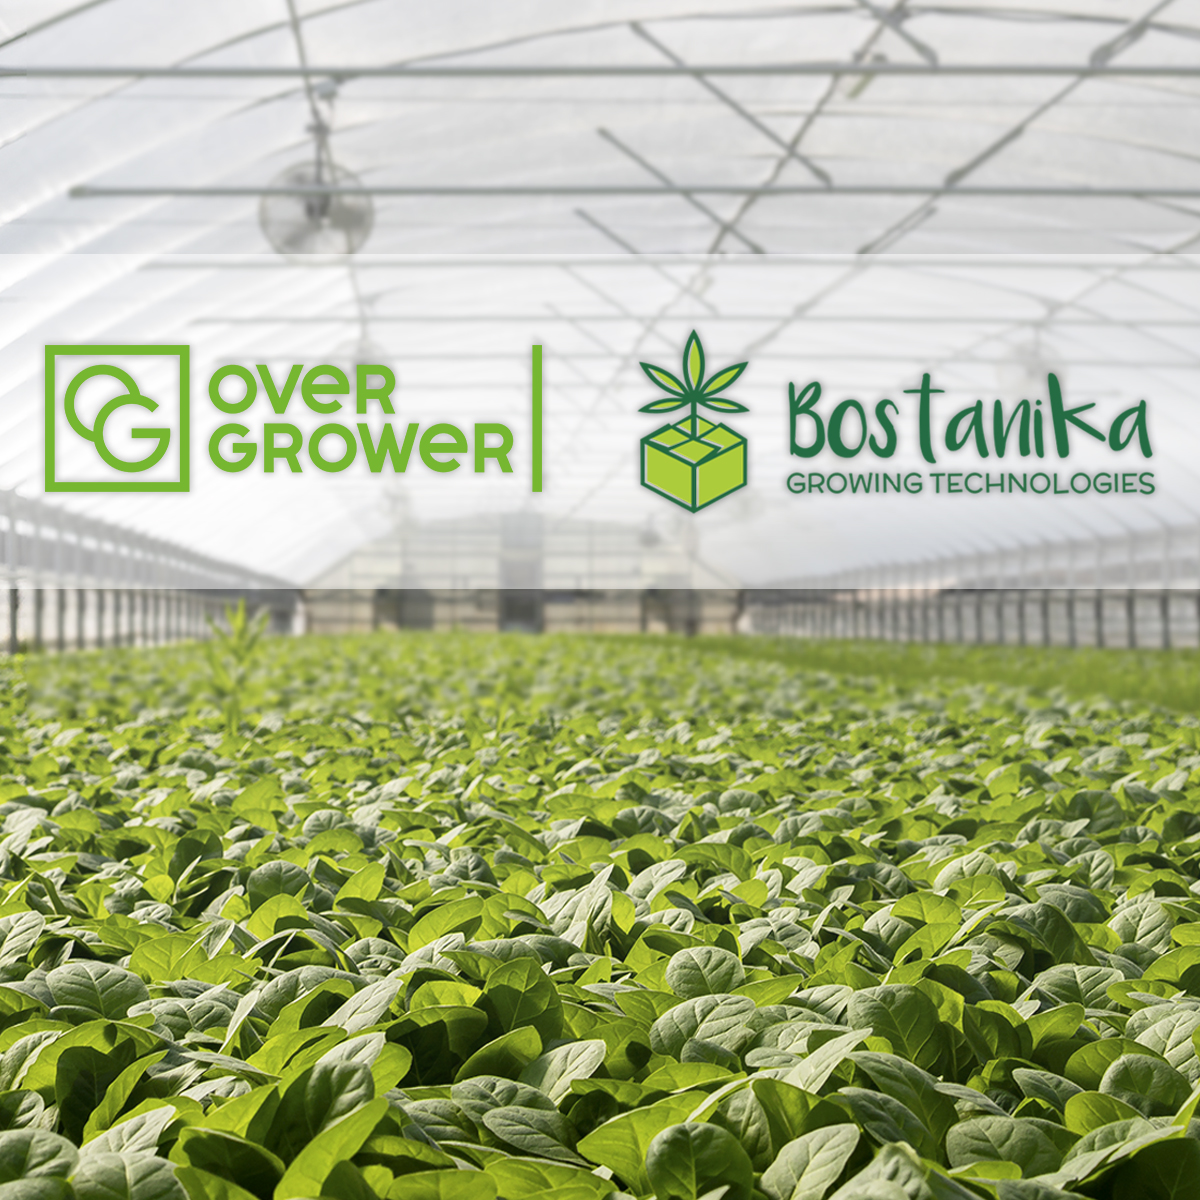 Компания Bostanika LLC Growing Technologies оказывают полный спектр услуг OverGrower!